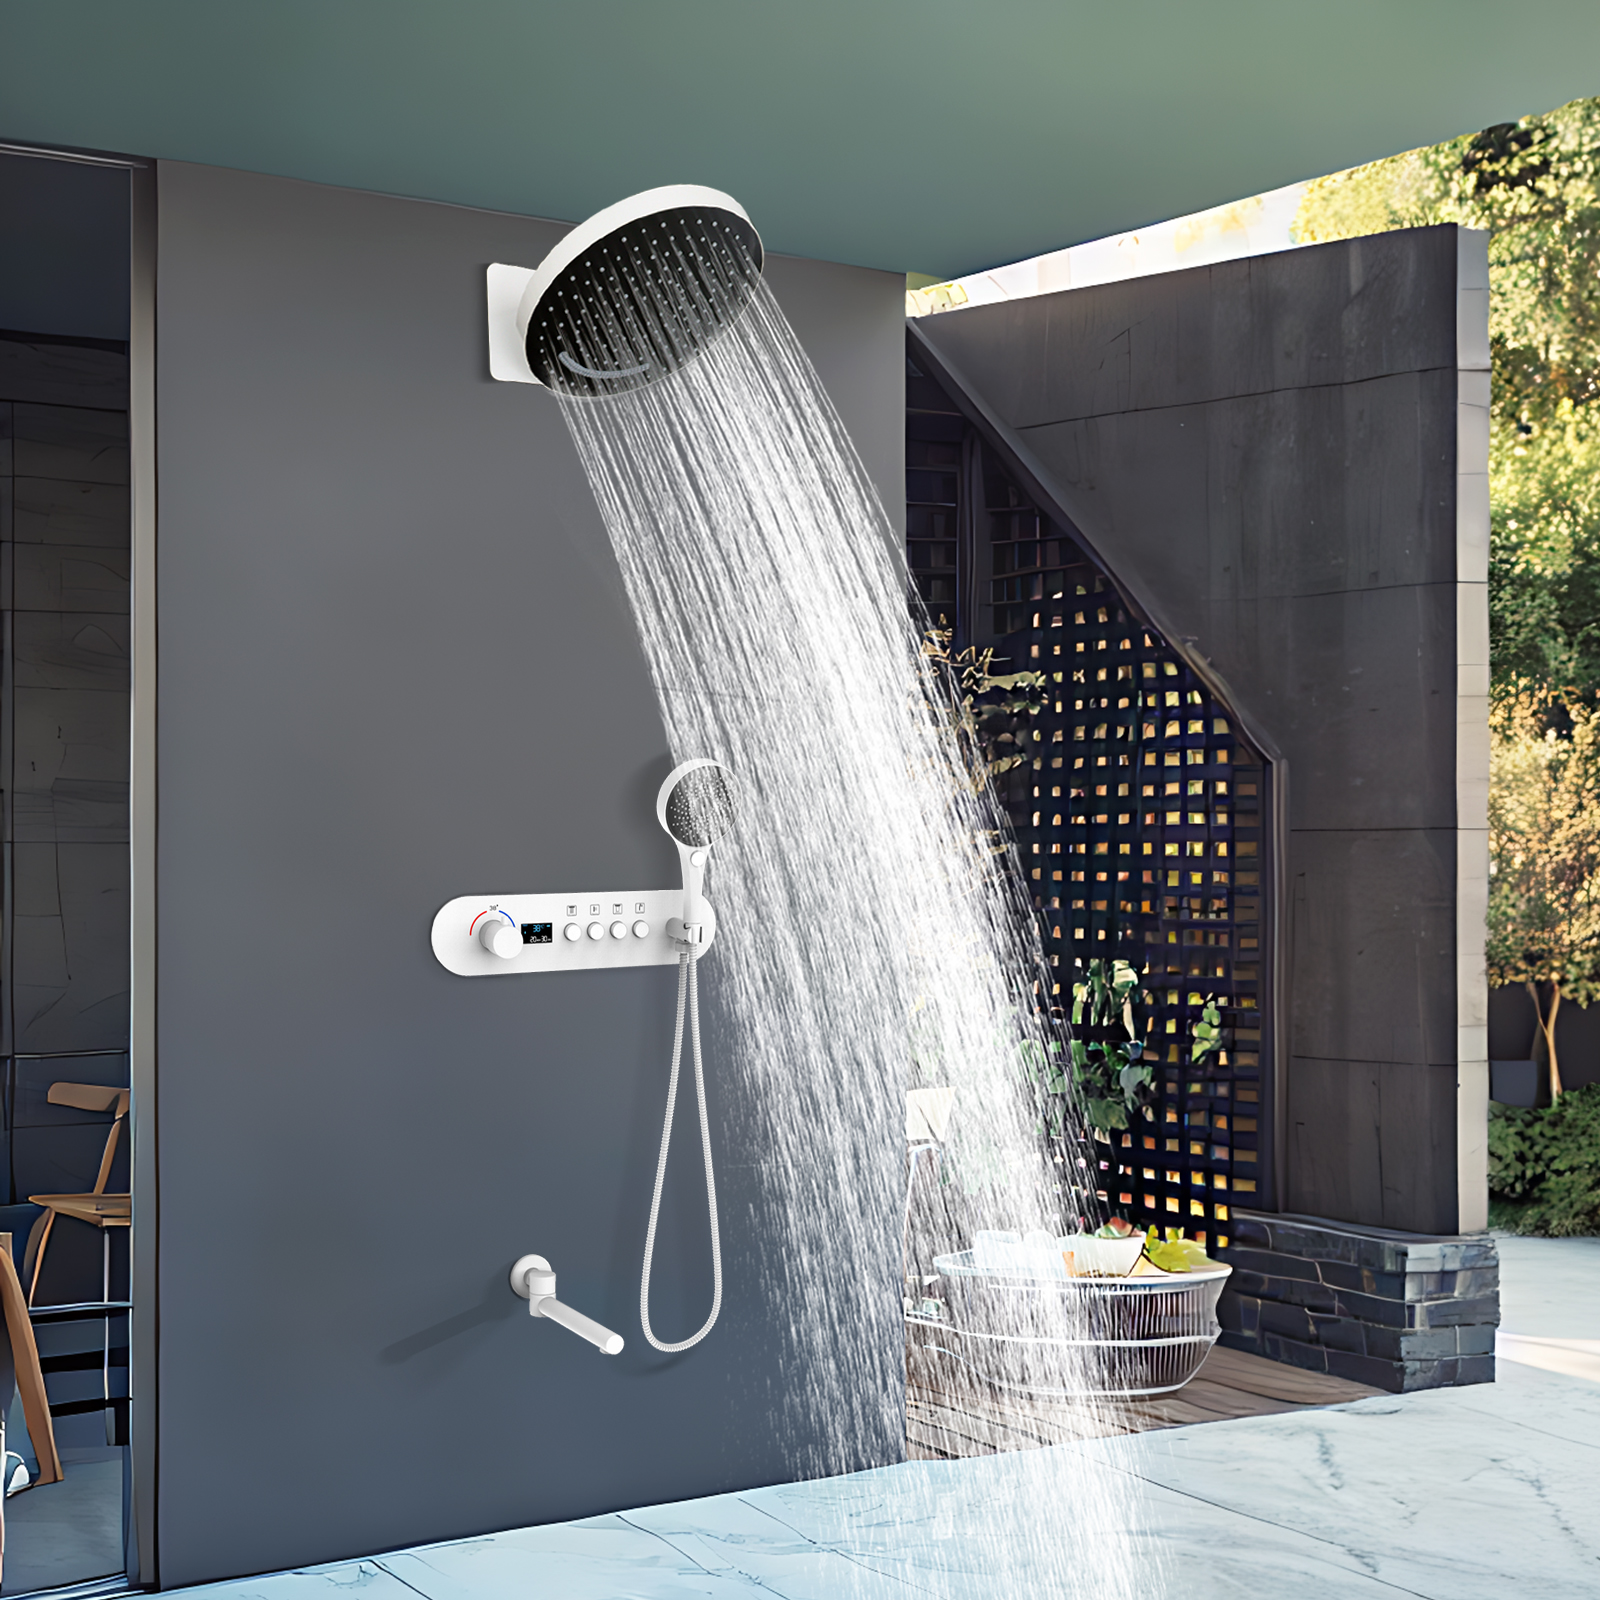 La válvula mezcladora de ducha de temperatura constante y lluvia montada en la pared redonda blanca reduce la salida de agua